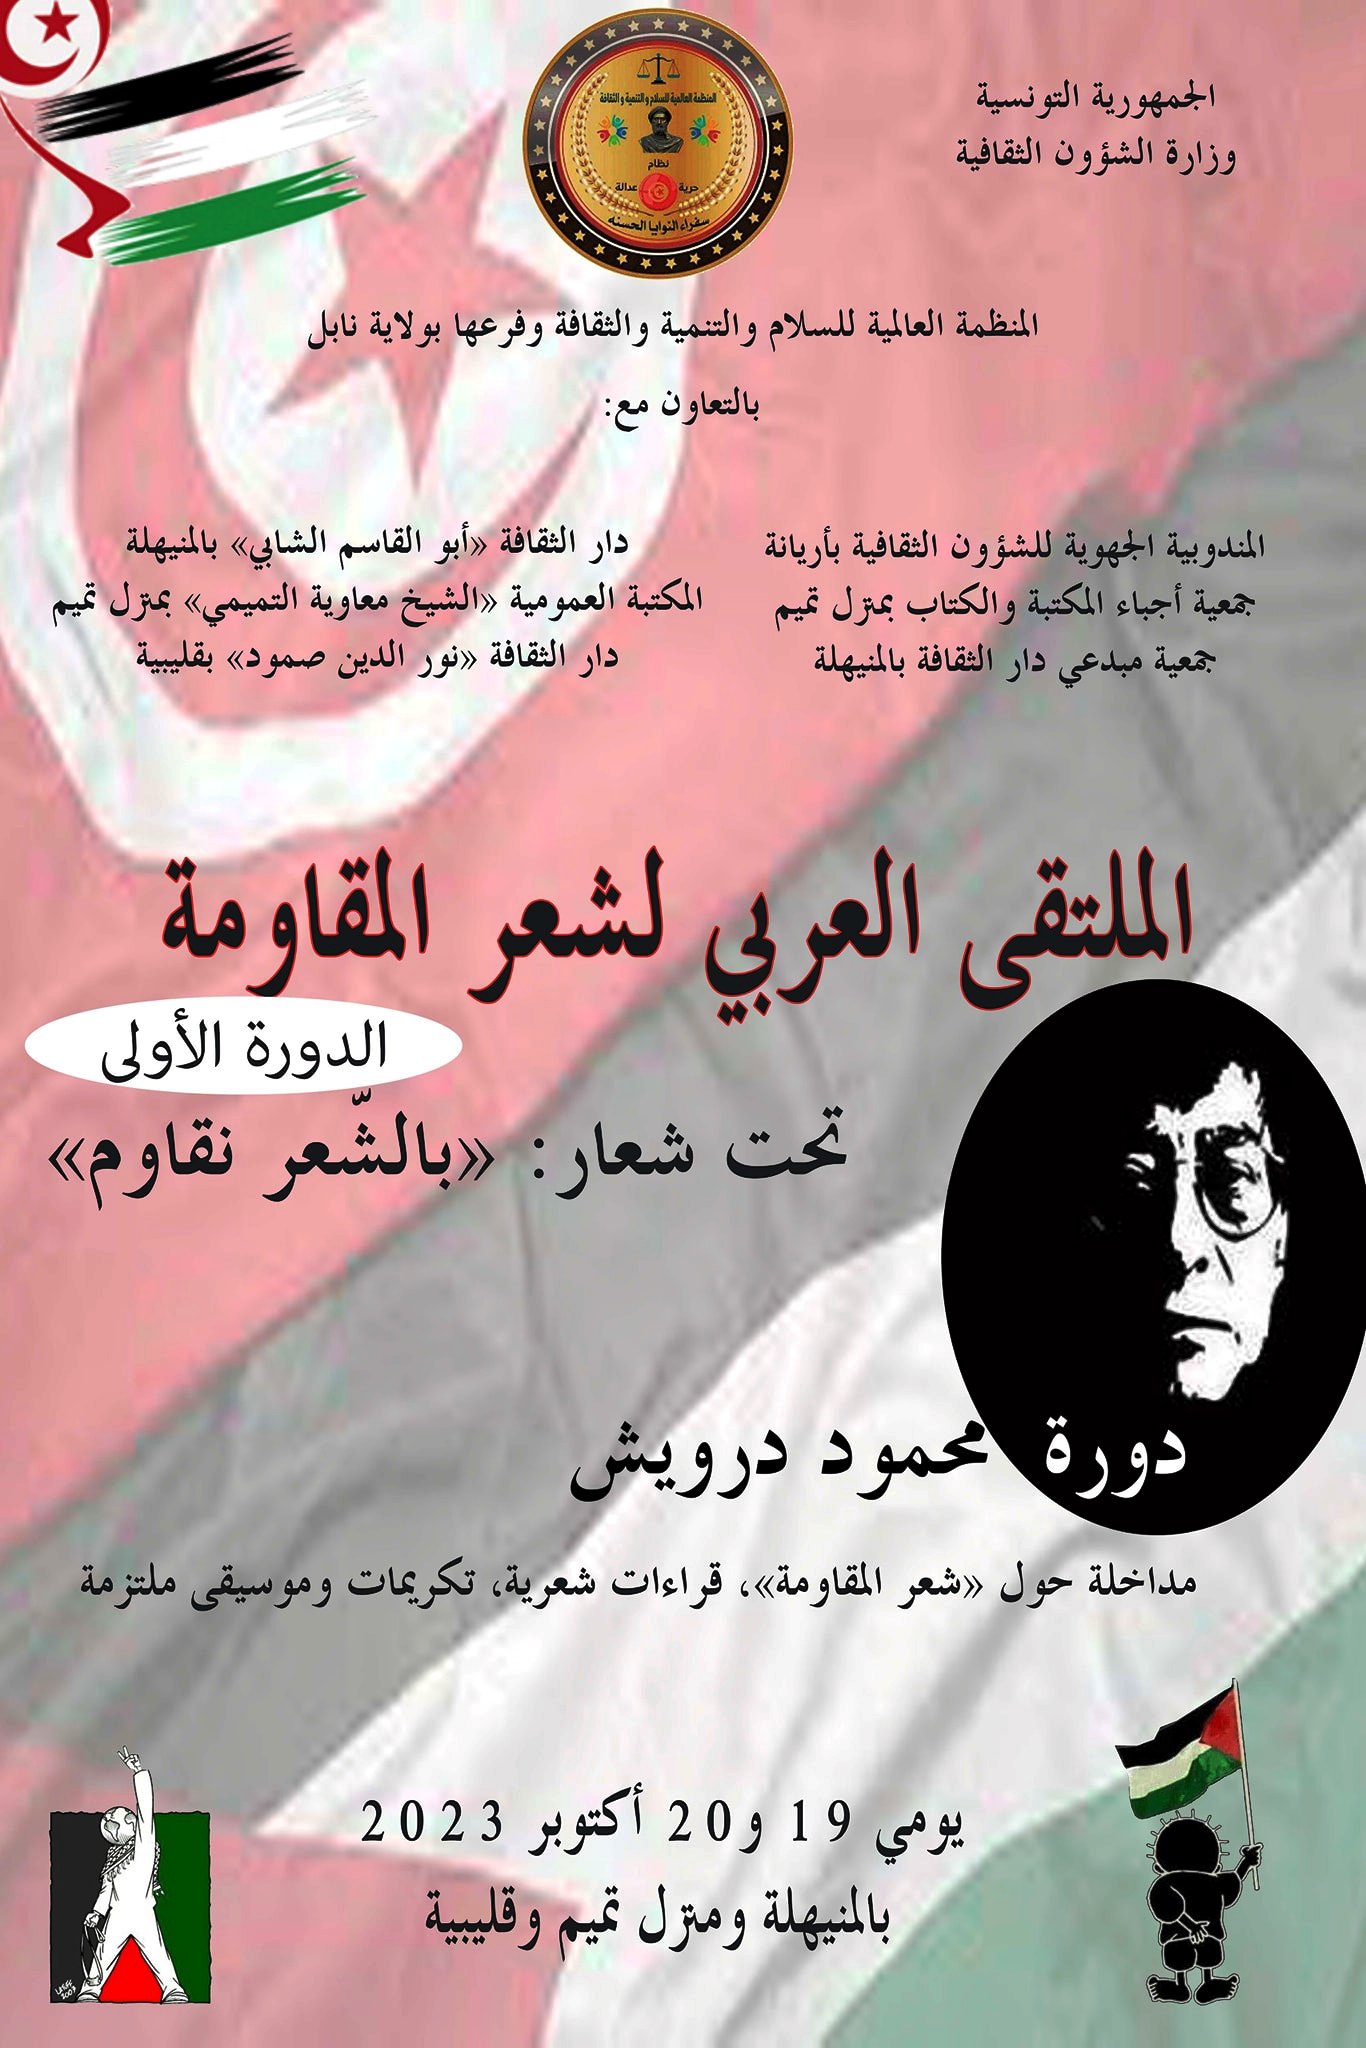 مساندة للقضية الفلسطينية: "الملتقى العربي لشعر المقاومة"يجوب جهات البلاد التونسية